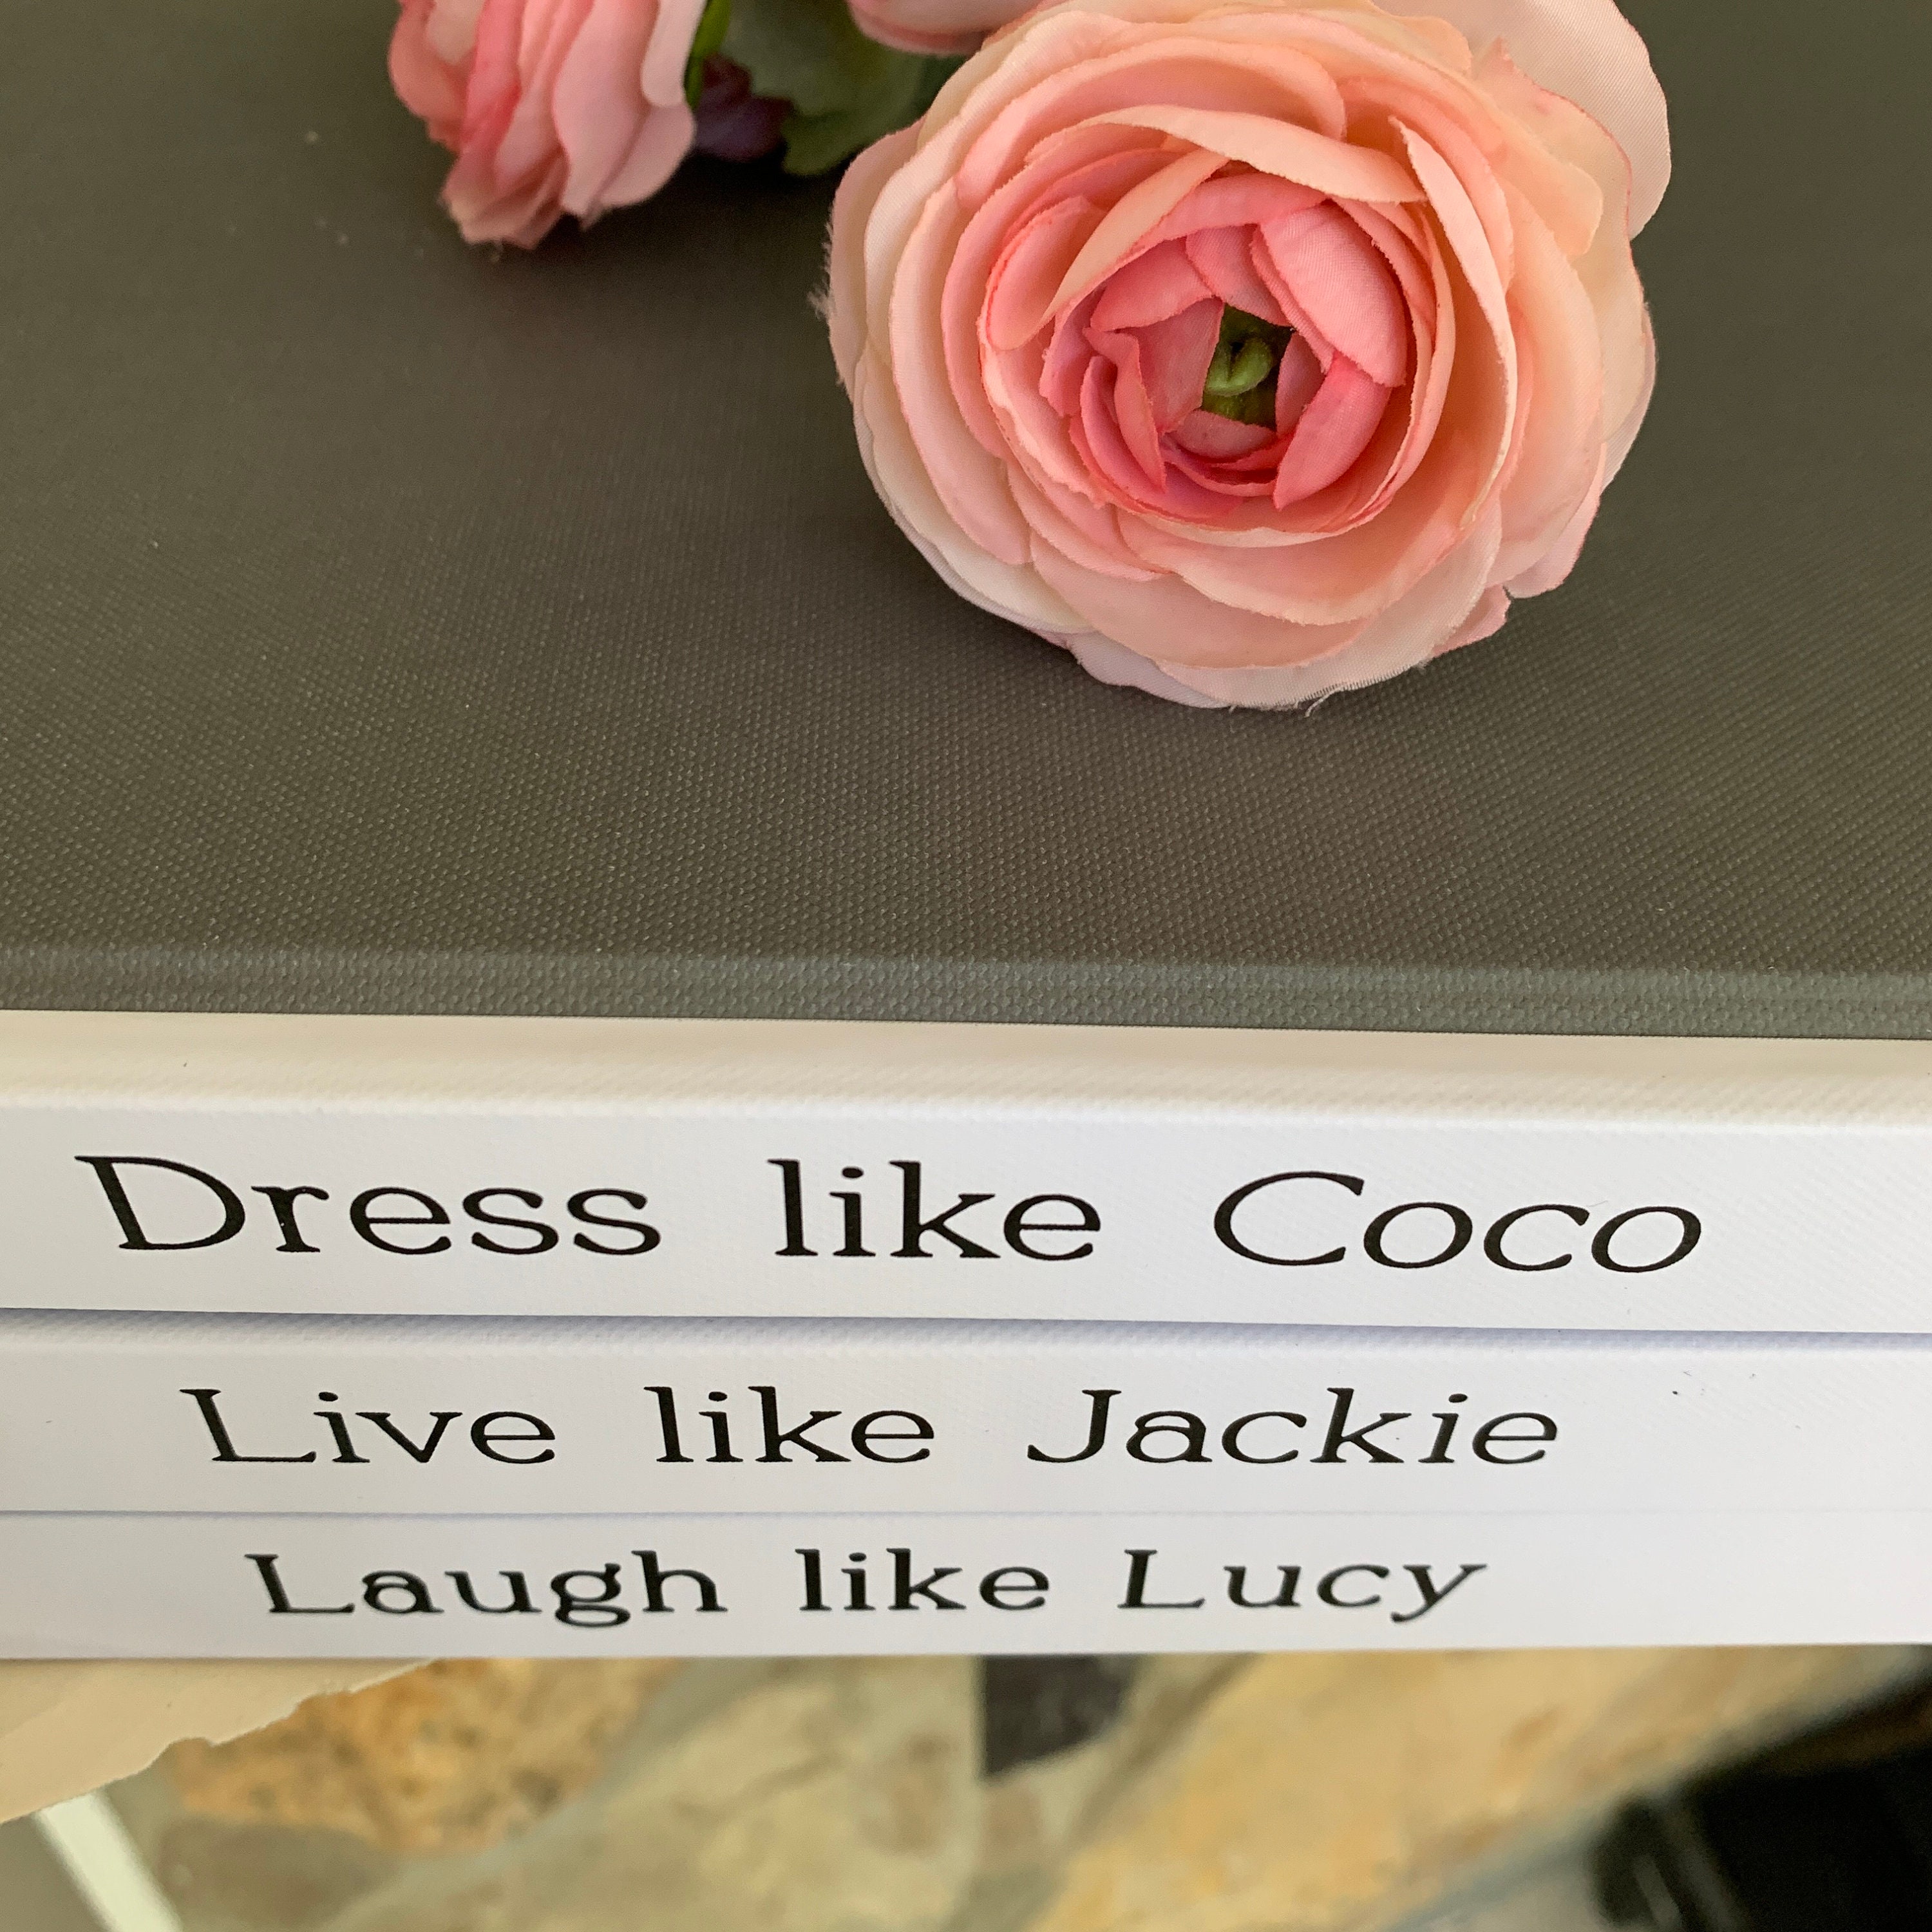 Cusom Coffee Table Book Stack Coco Chanel Quote Fashion 